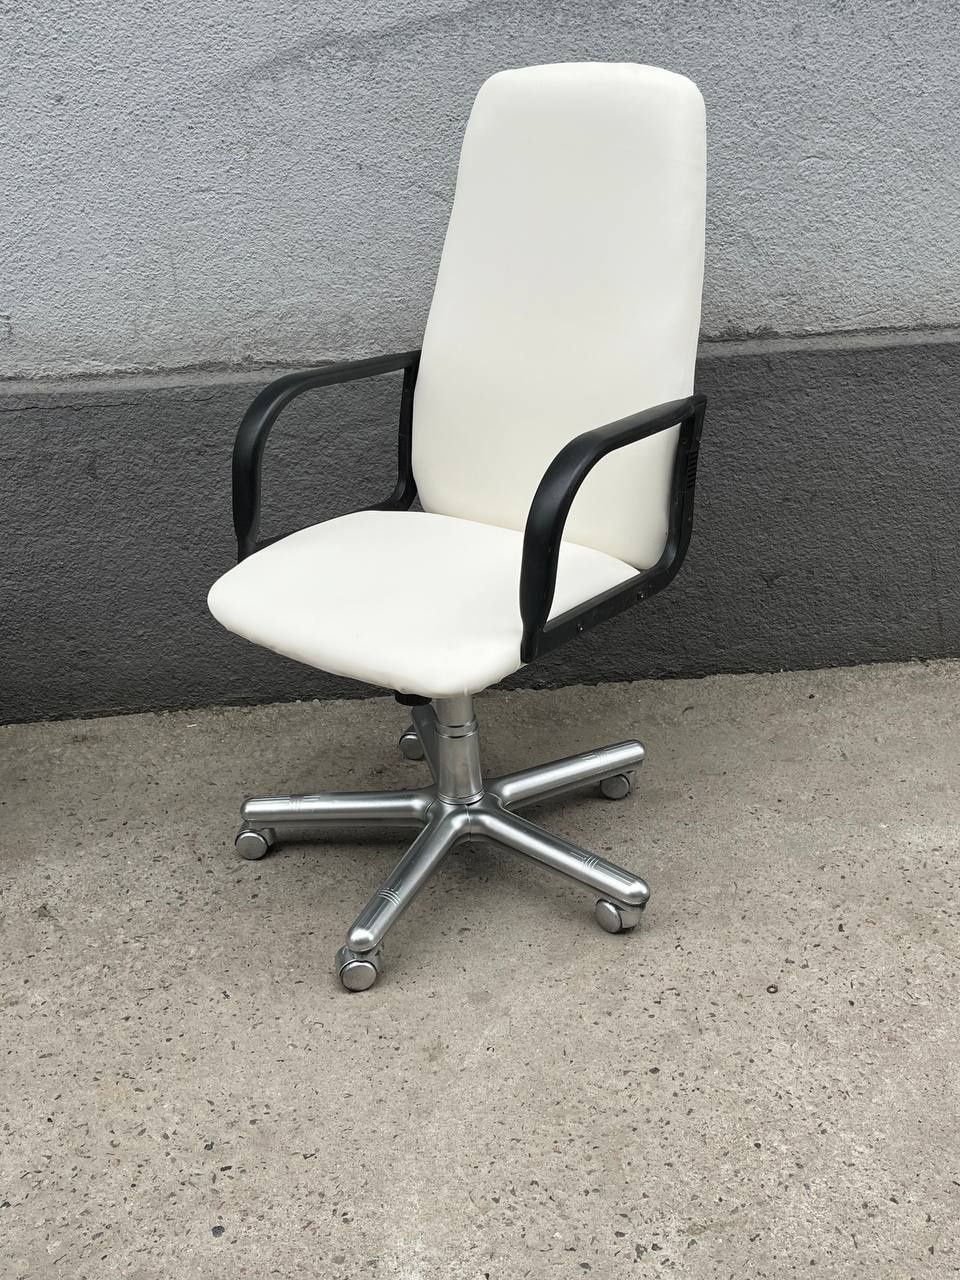 Офисный кресло цена от 14000 выше